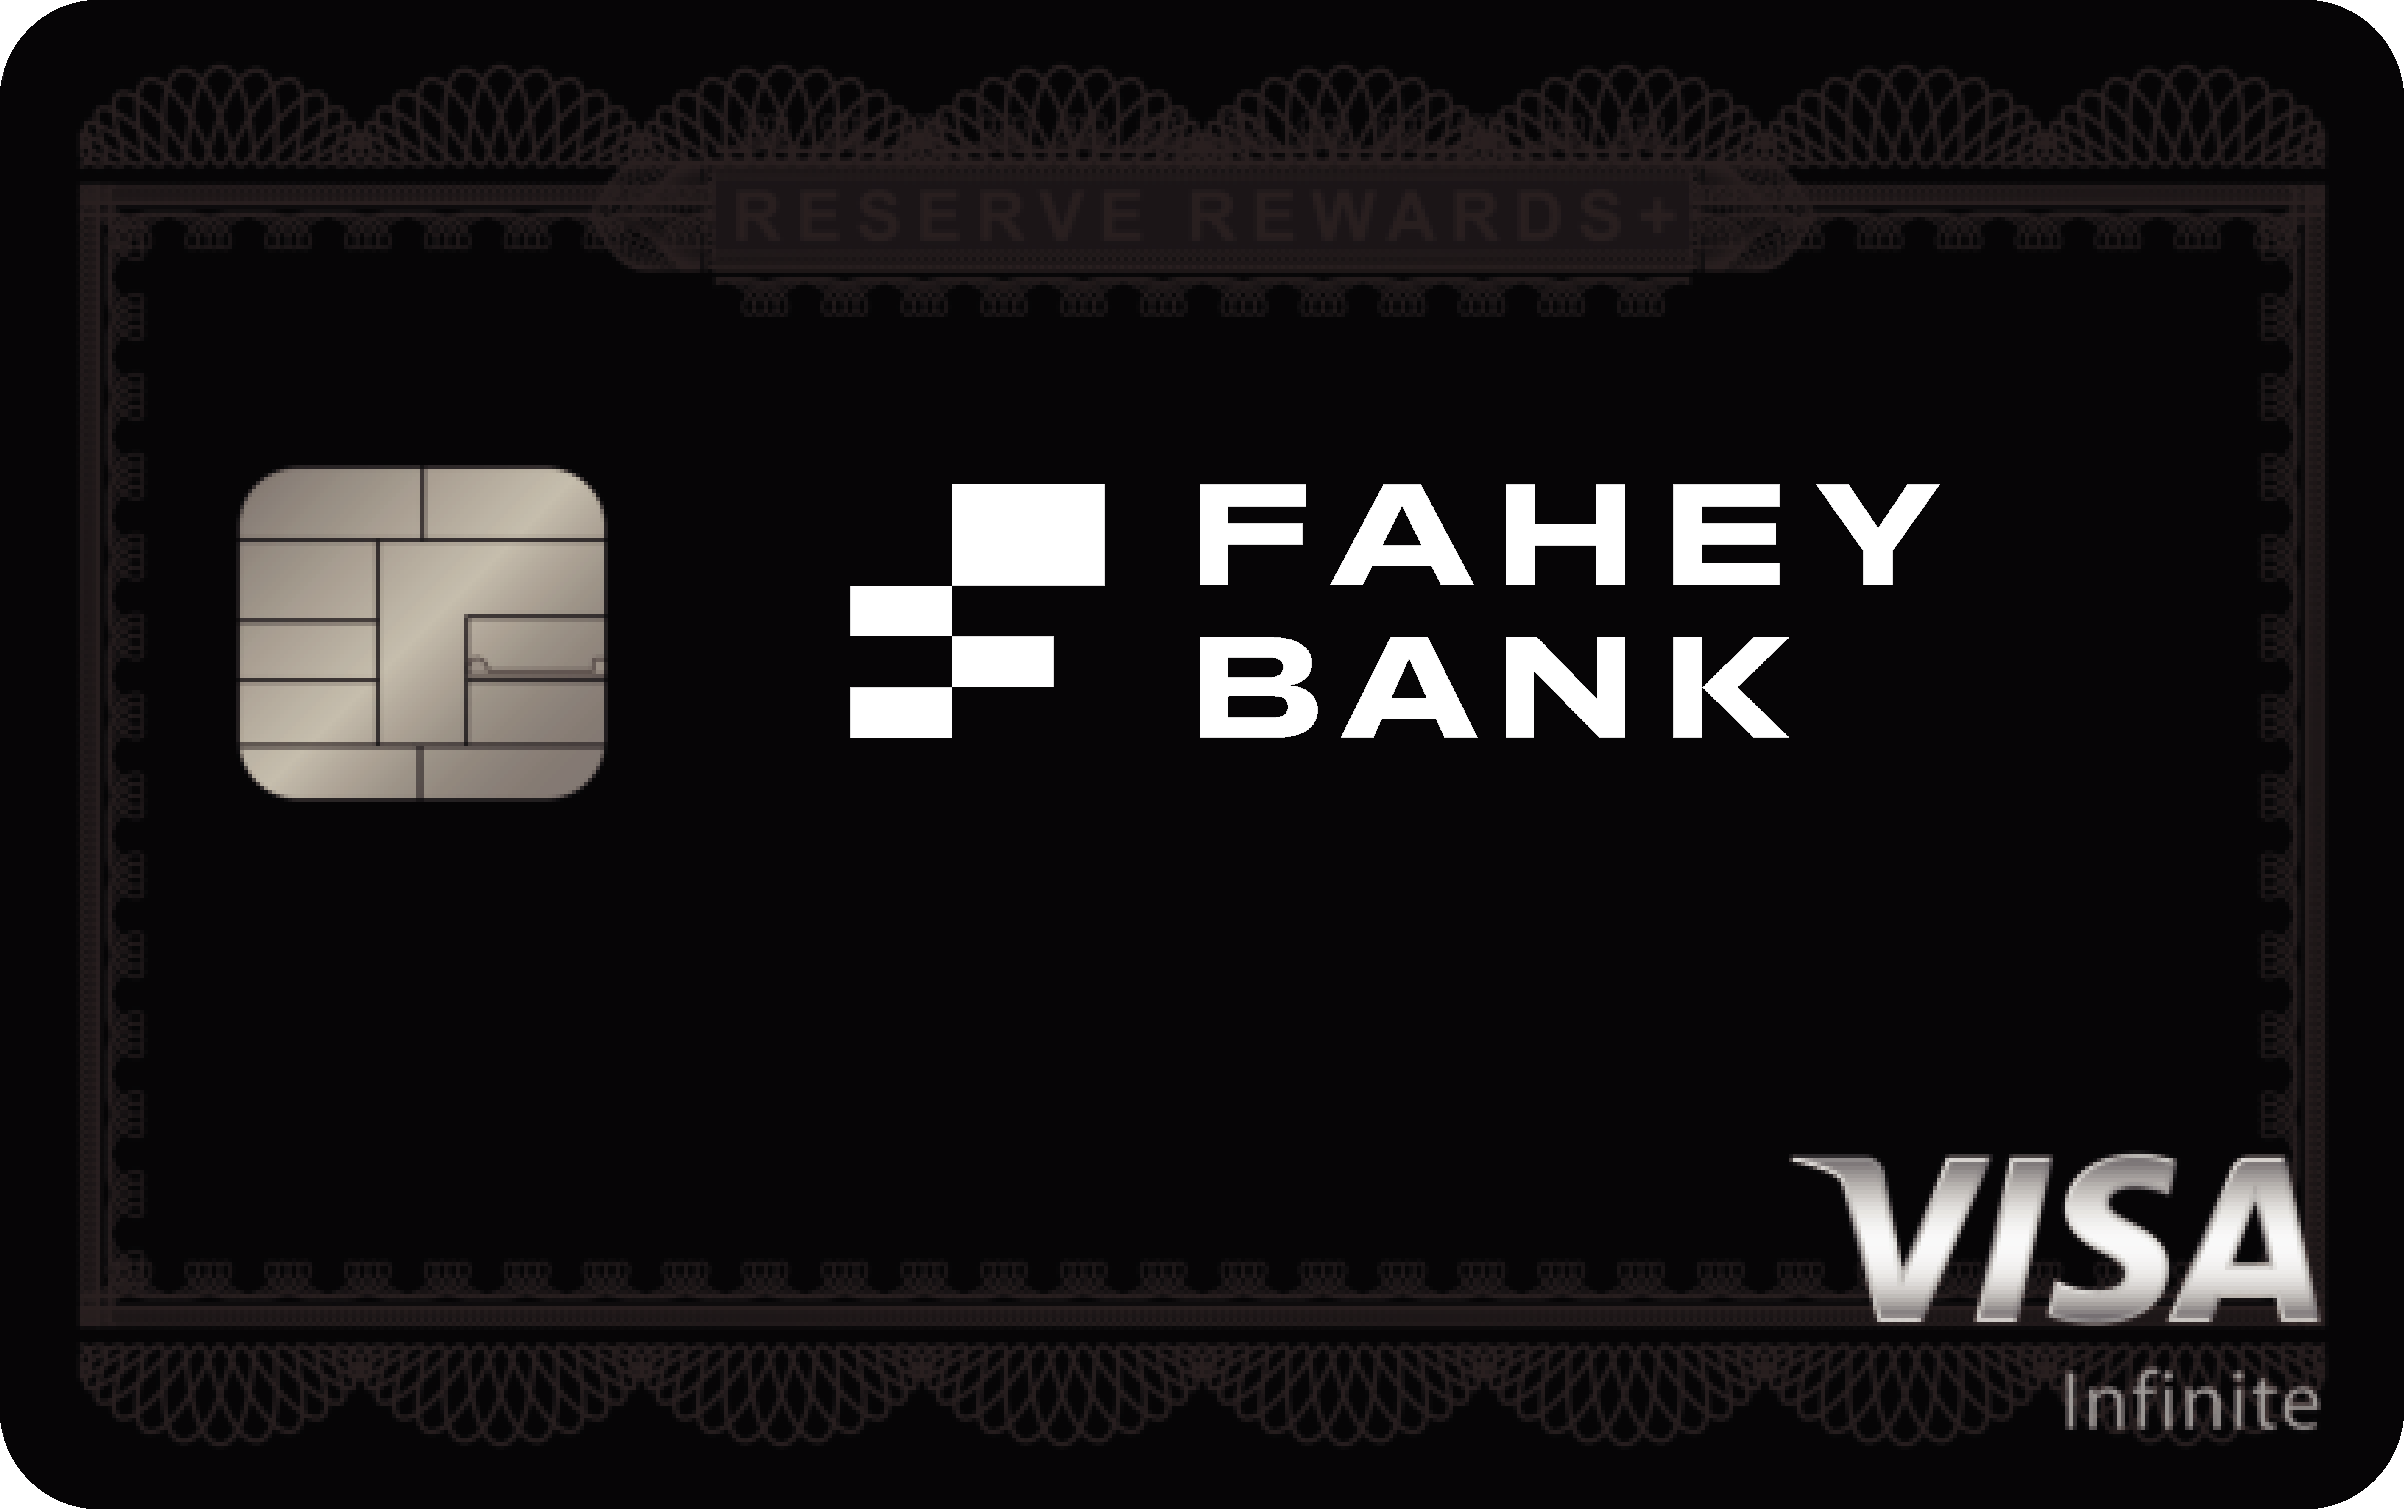 The Fahey Banking Company